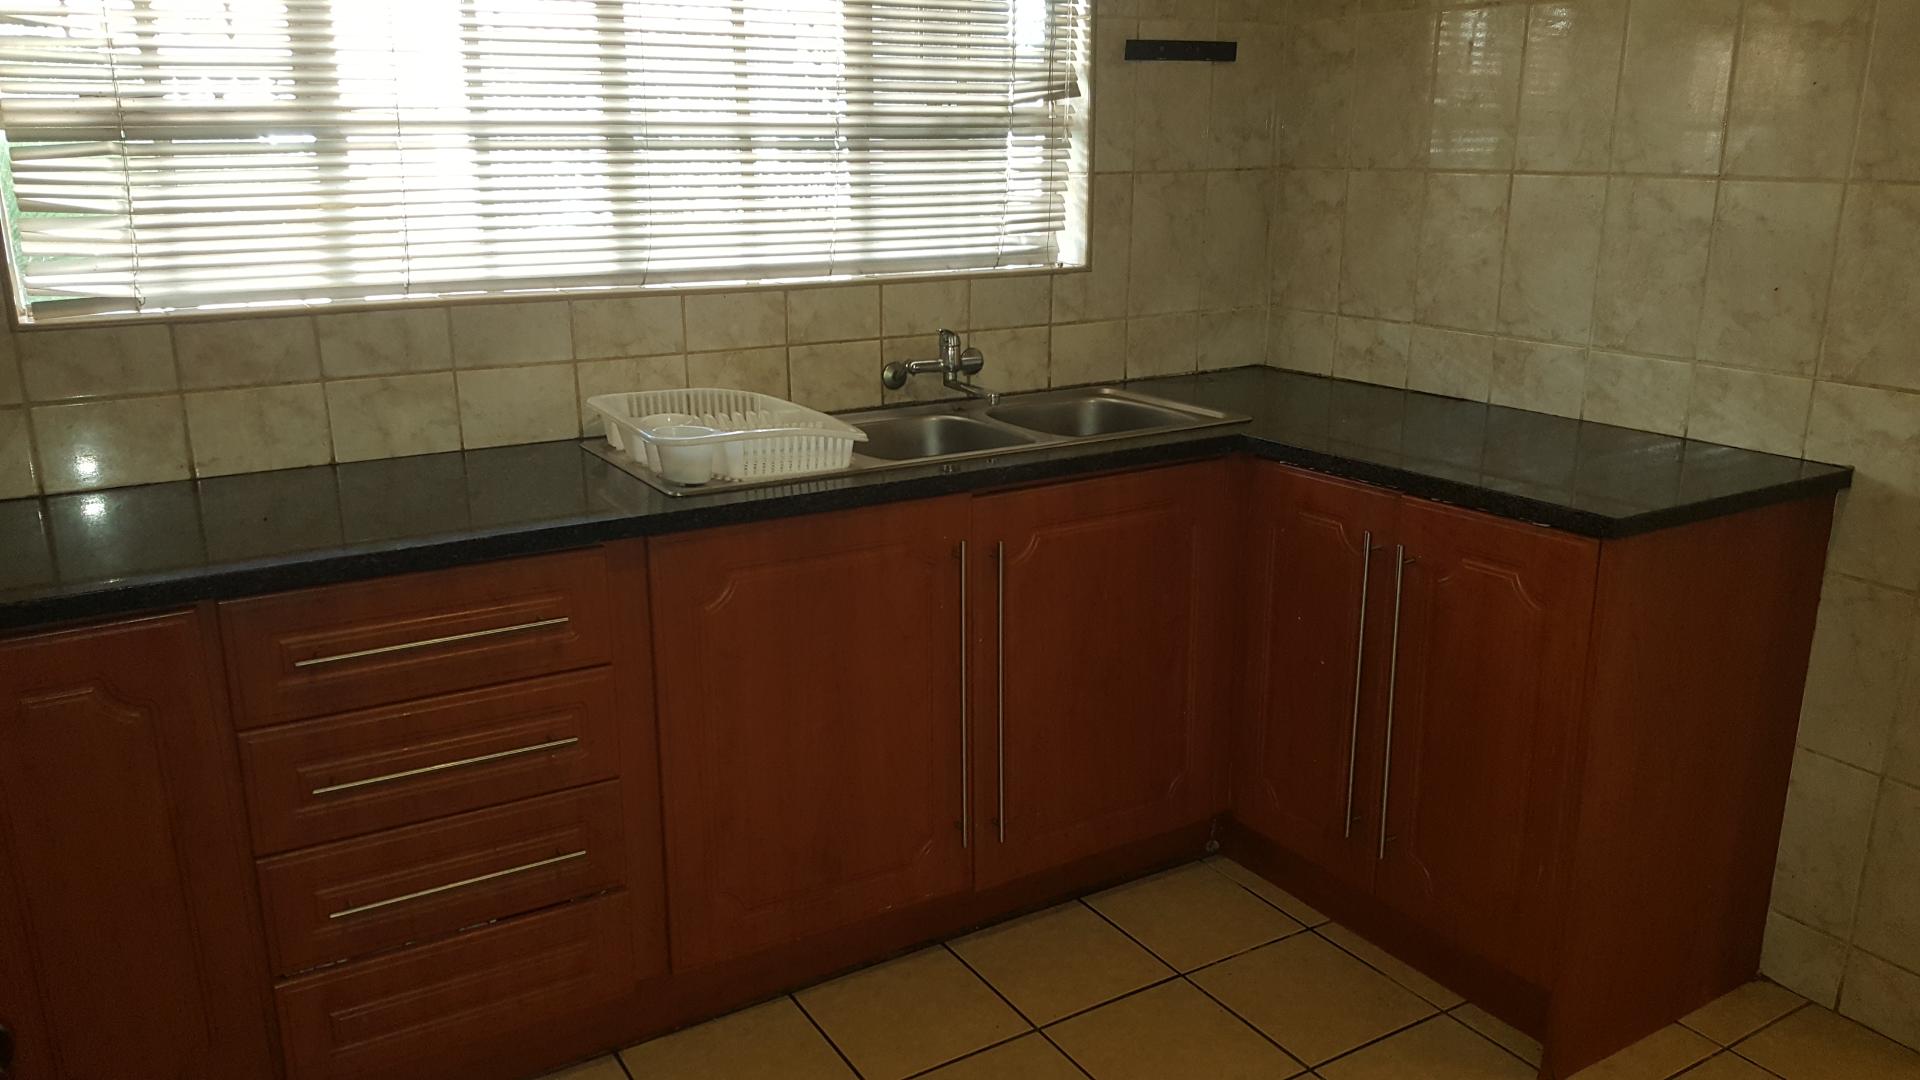 2 Bedroom Property for Sale in Vanderbijlpark CW 3 Gauteng